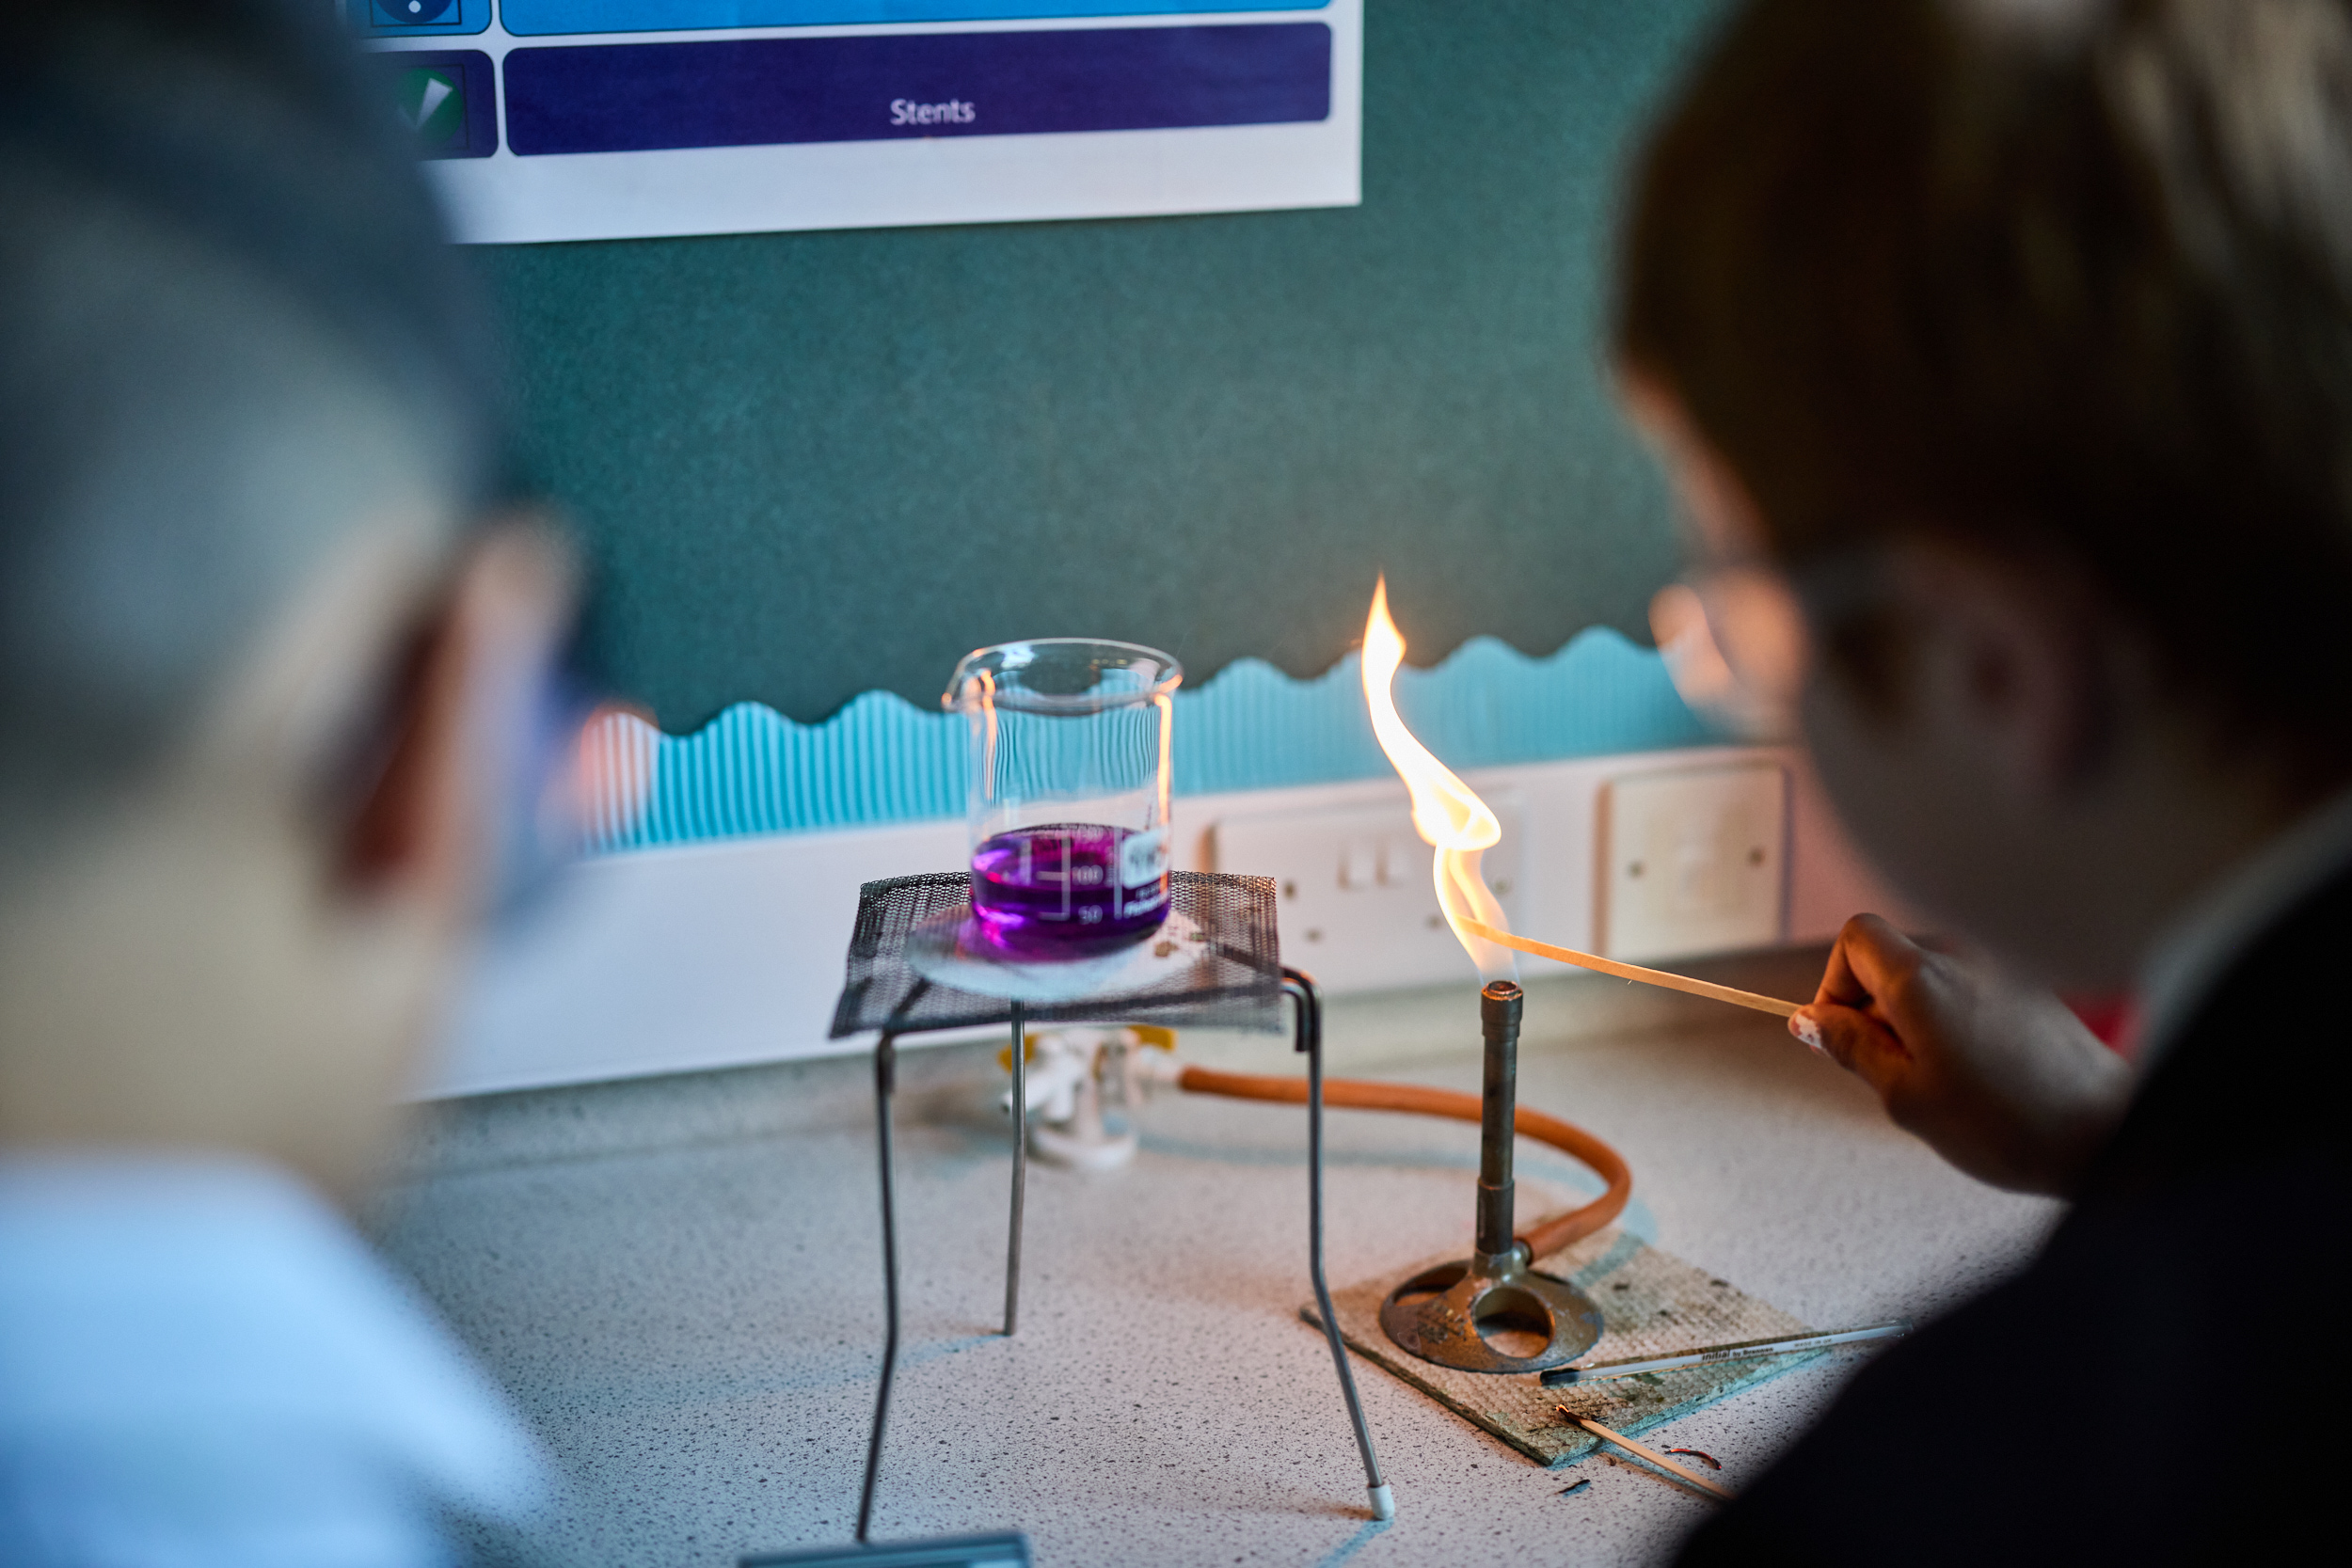 bunson burner in science lesson